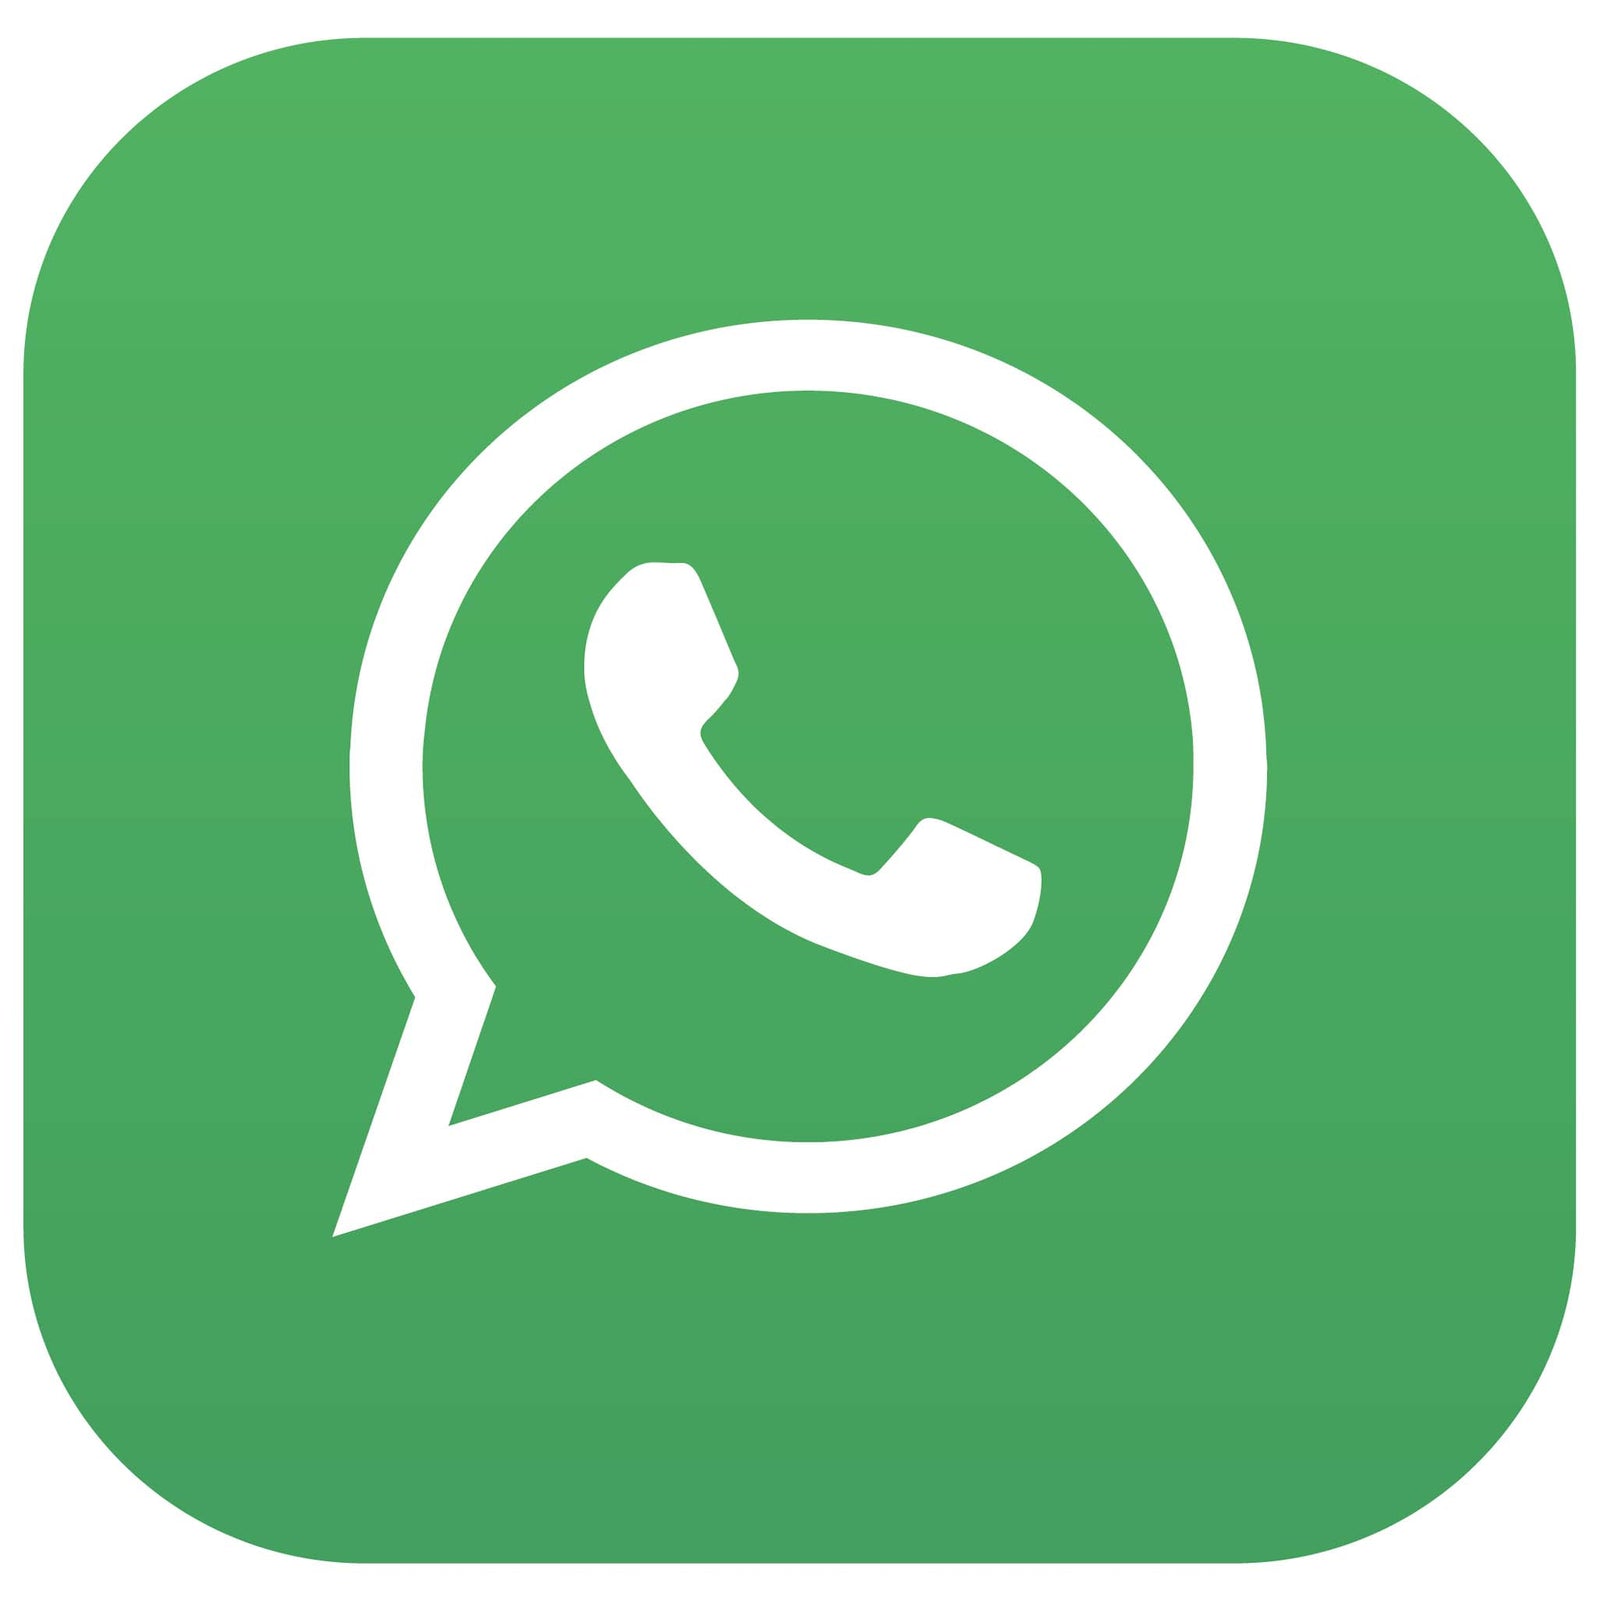 Icona dell'app whatsapp per permettere ai clienti di contattarmi attraverso whatsapp